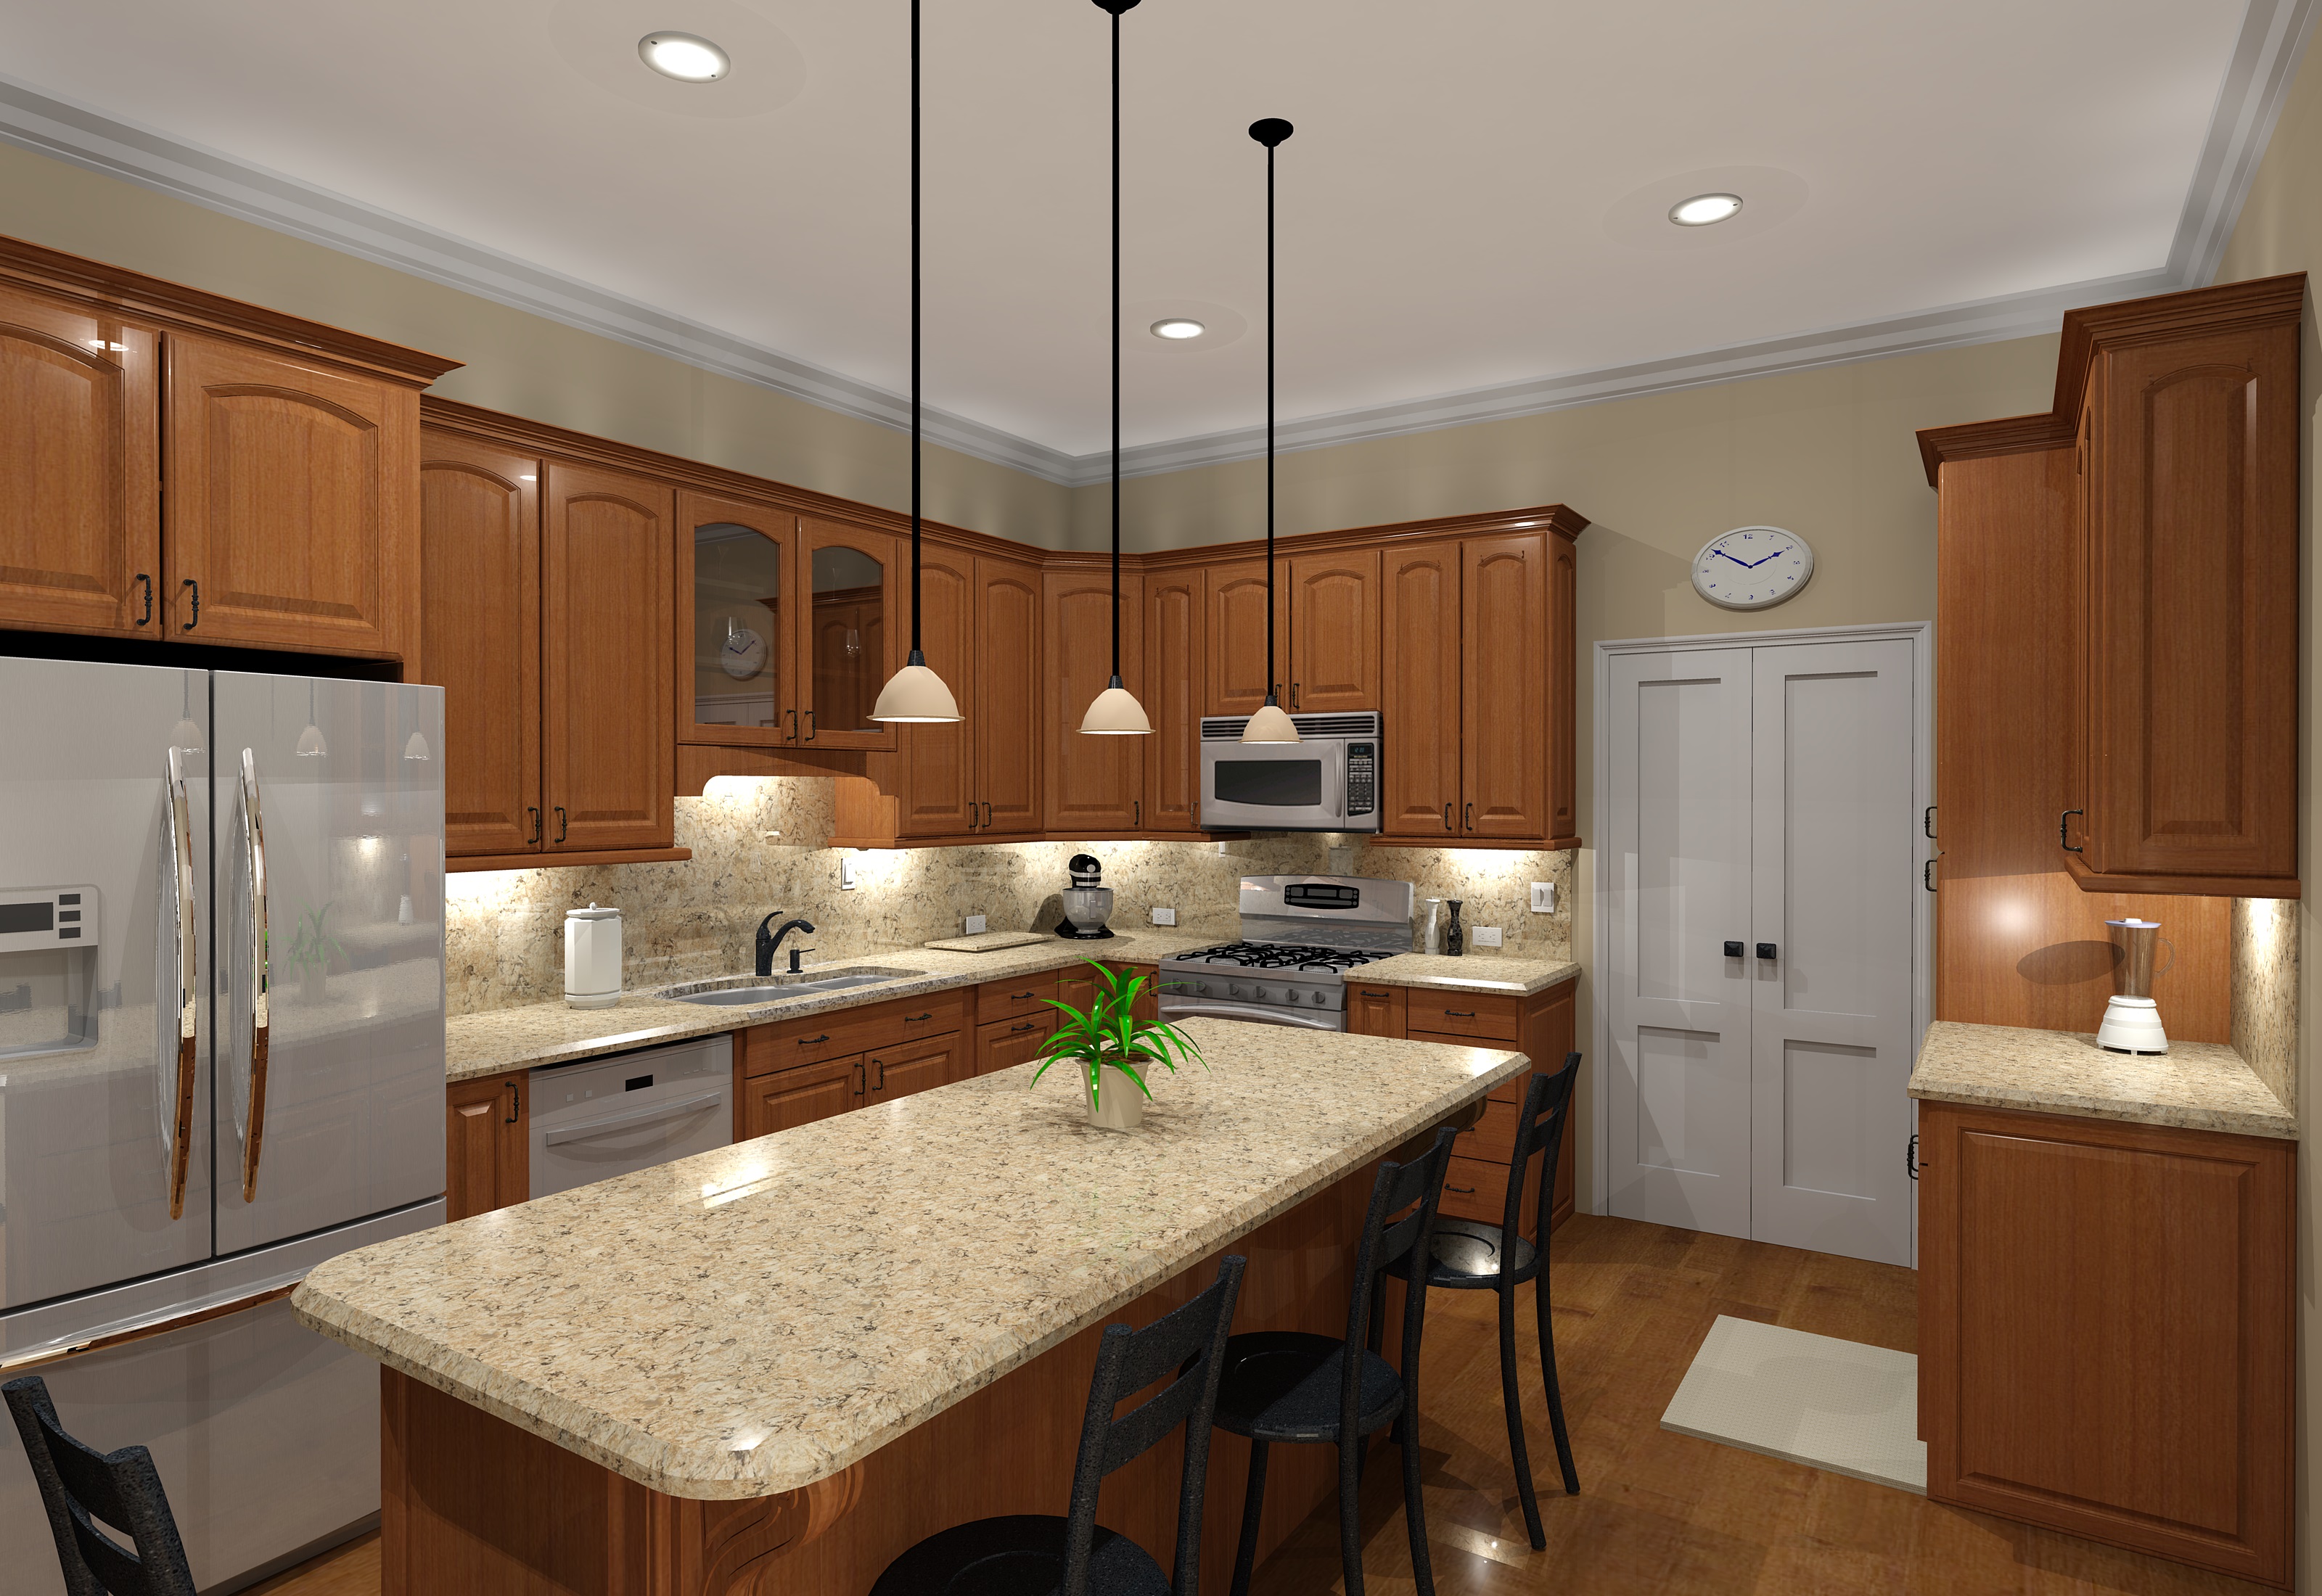 Kitchen design software rendering